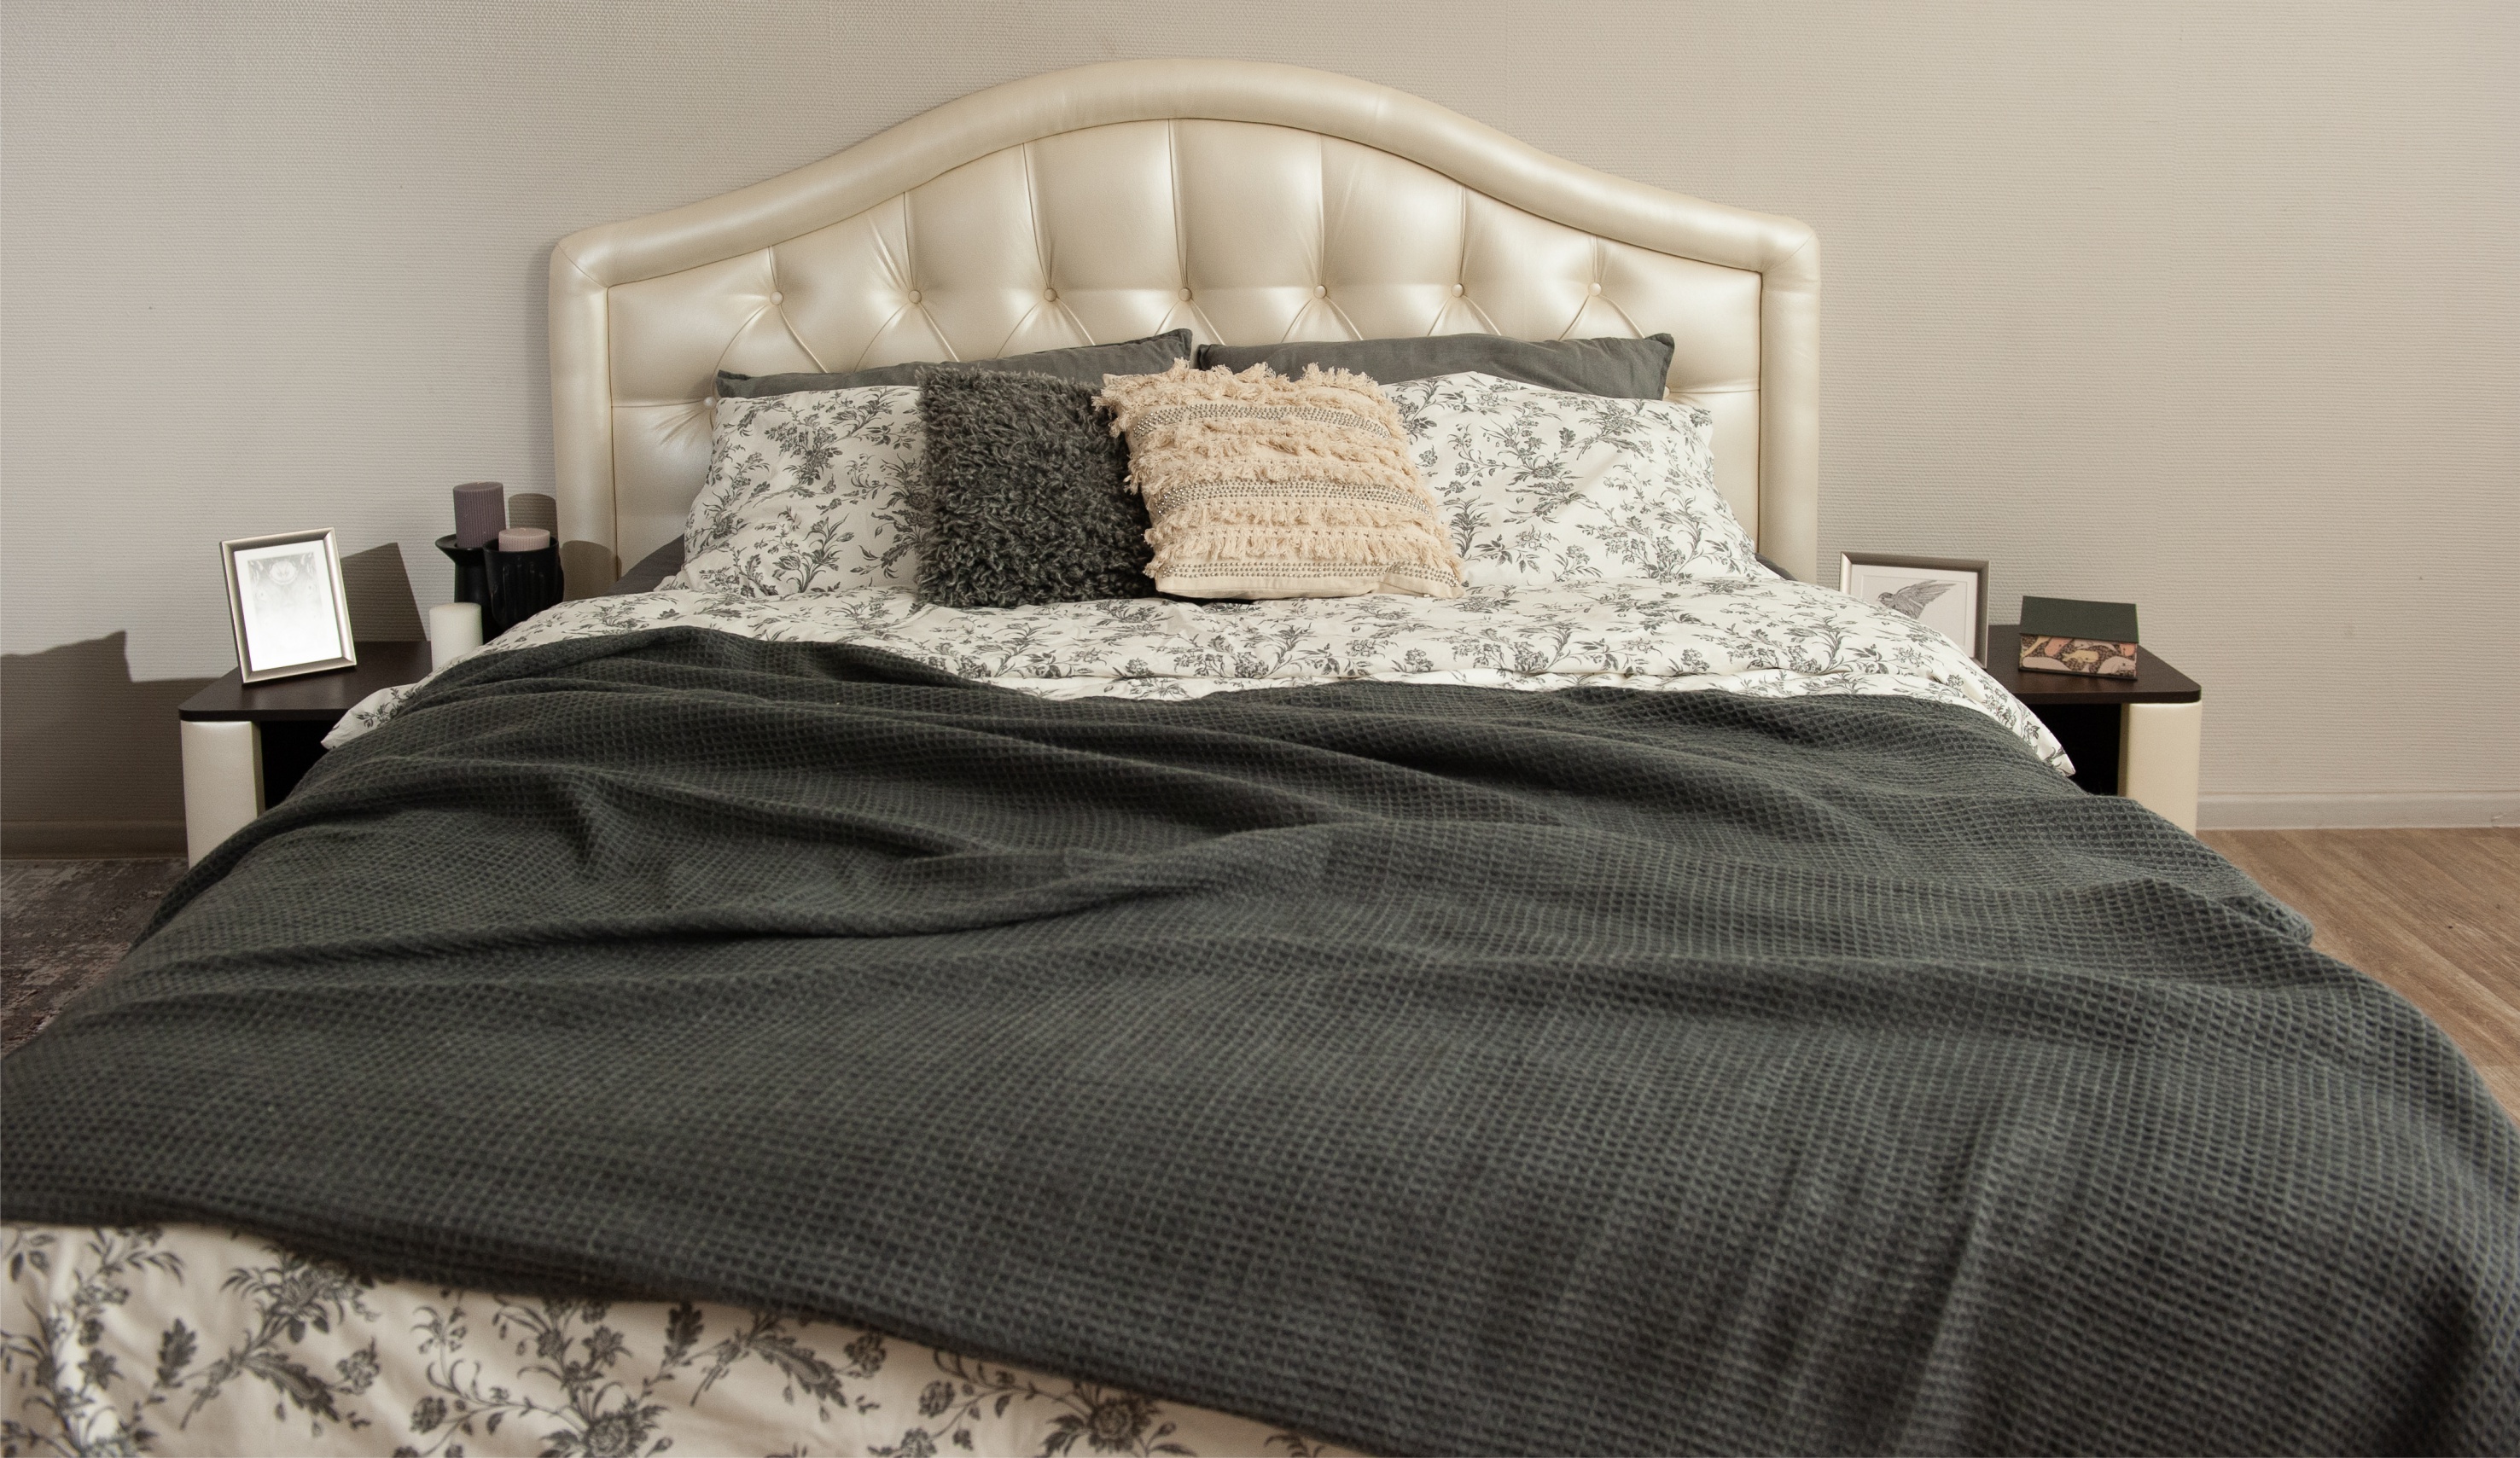 Мягкая кровать Элизабет 140, цвет pearl shell с пуговицами (подъемник) - фото 8